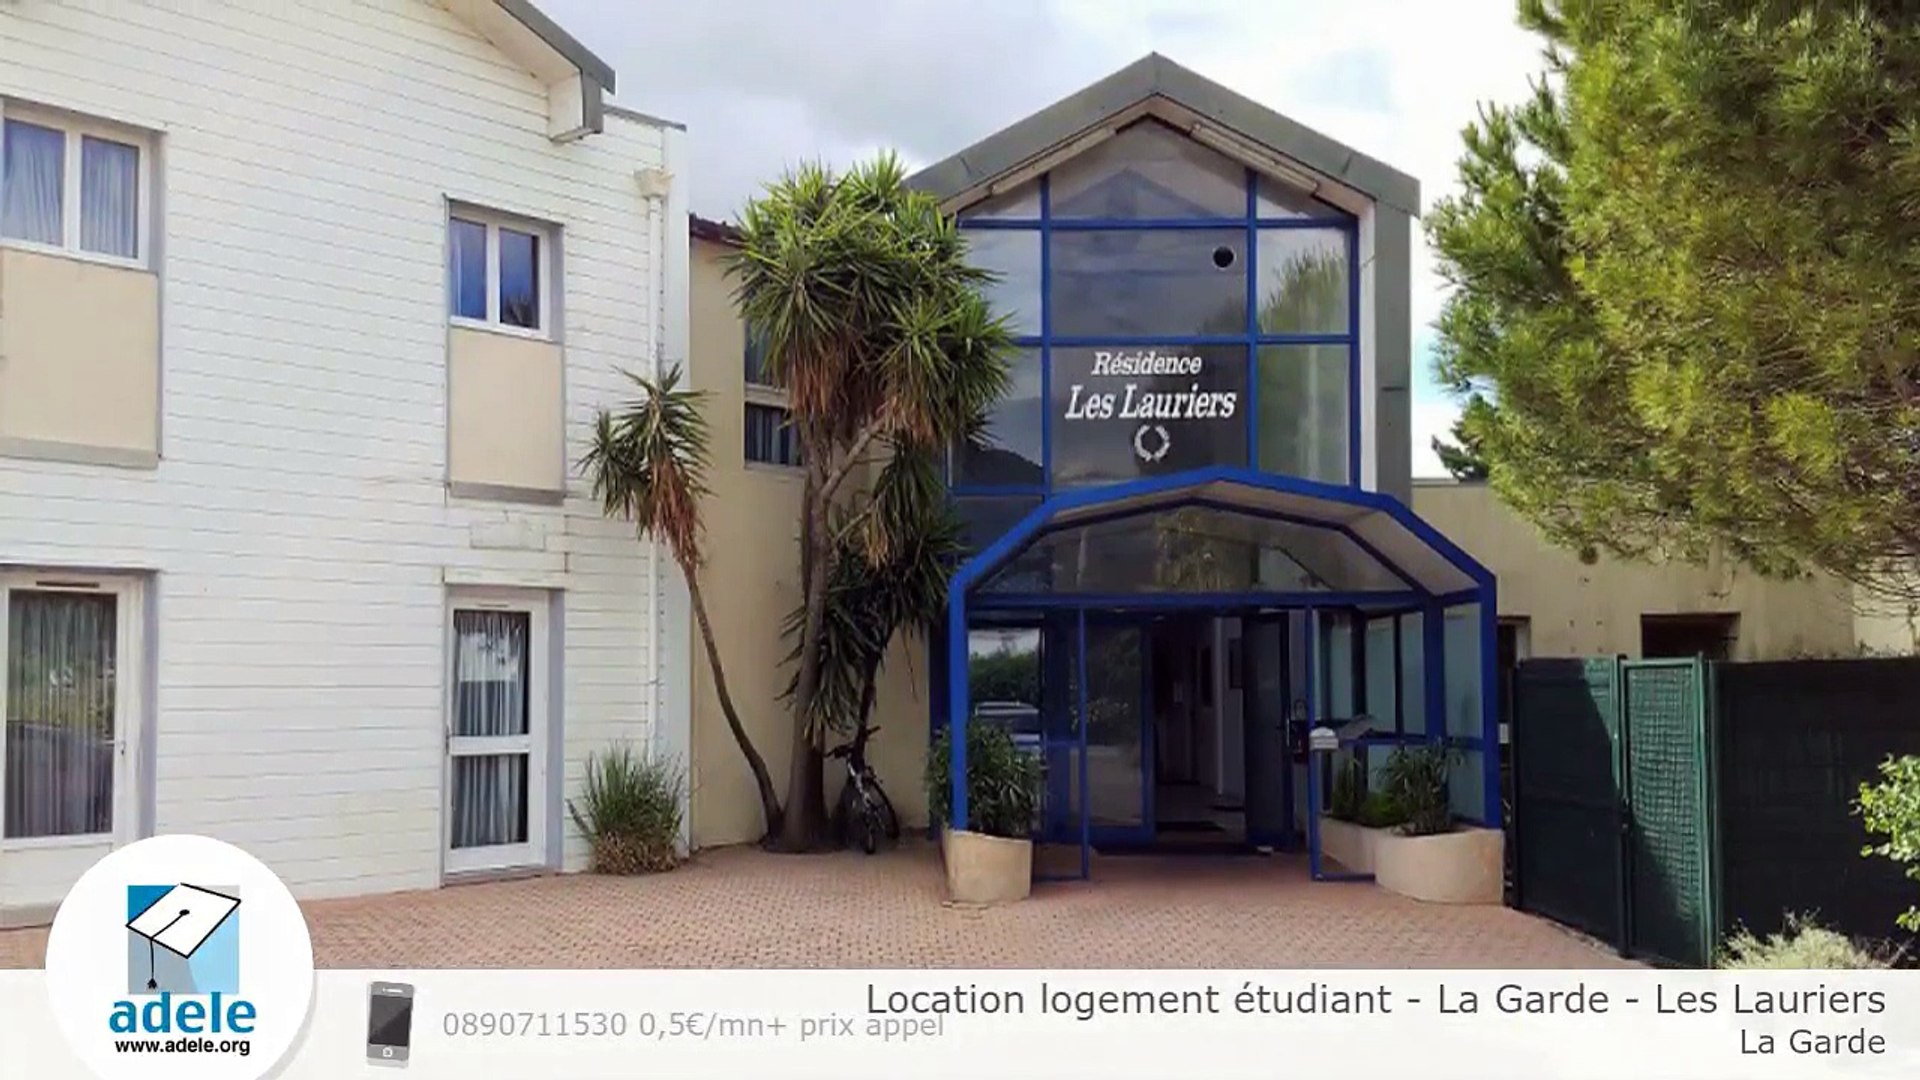 Location logement étudiant - La Garde - Les Lauriers - Vidéo Dailymotion